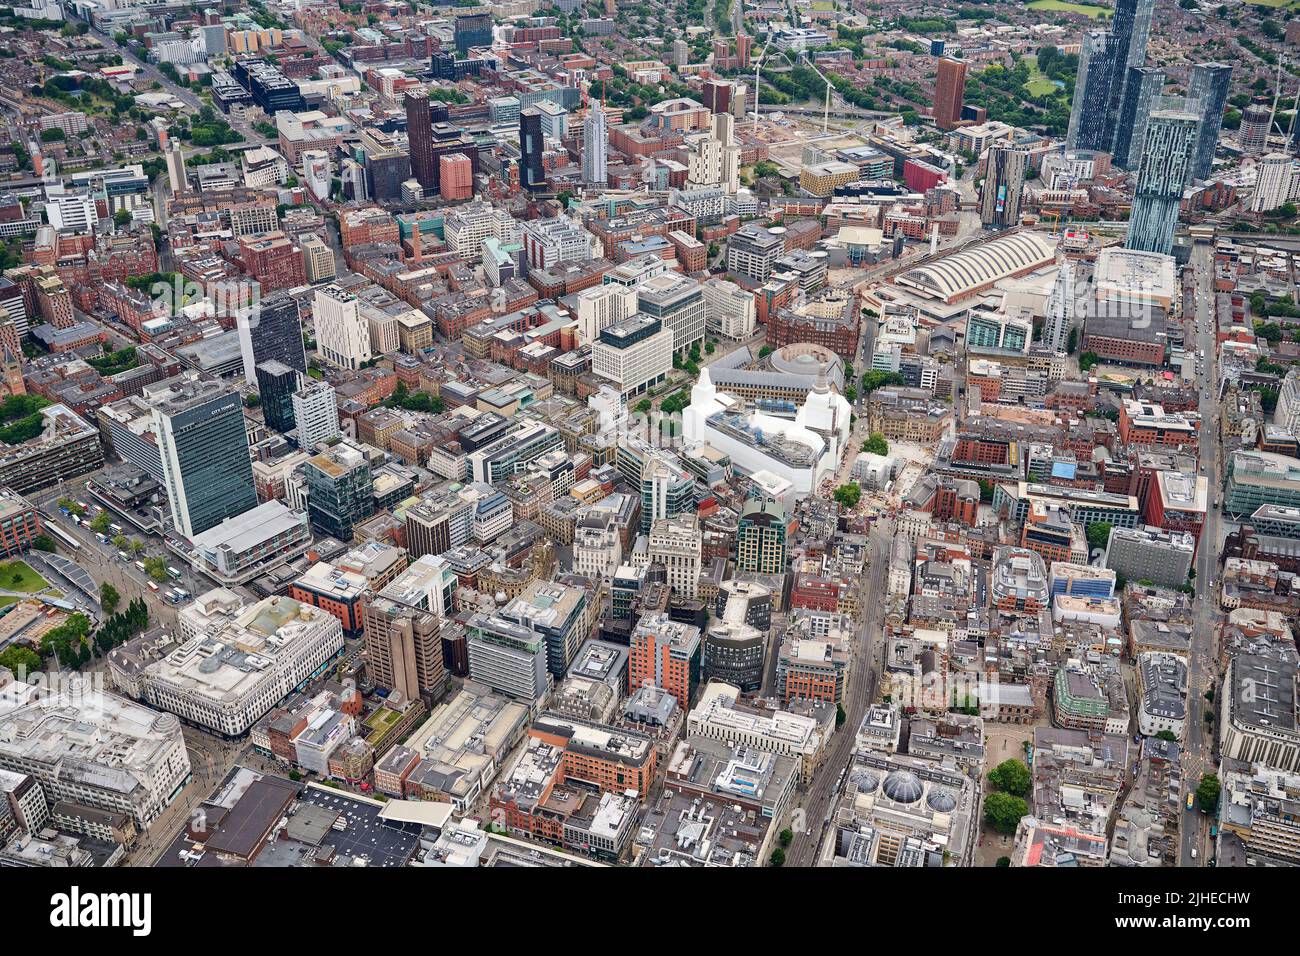 Vue aérienne du centre-ville de Manchester, nord-ouest de l'Angleterre, nord de l'Angleterre, Royaume-Uni Banque D'Images